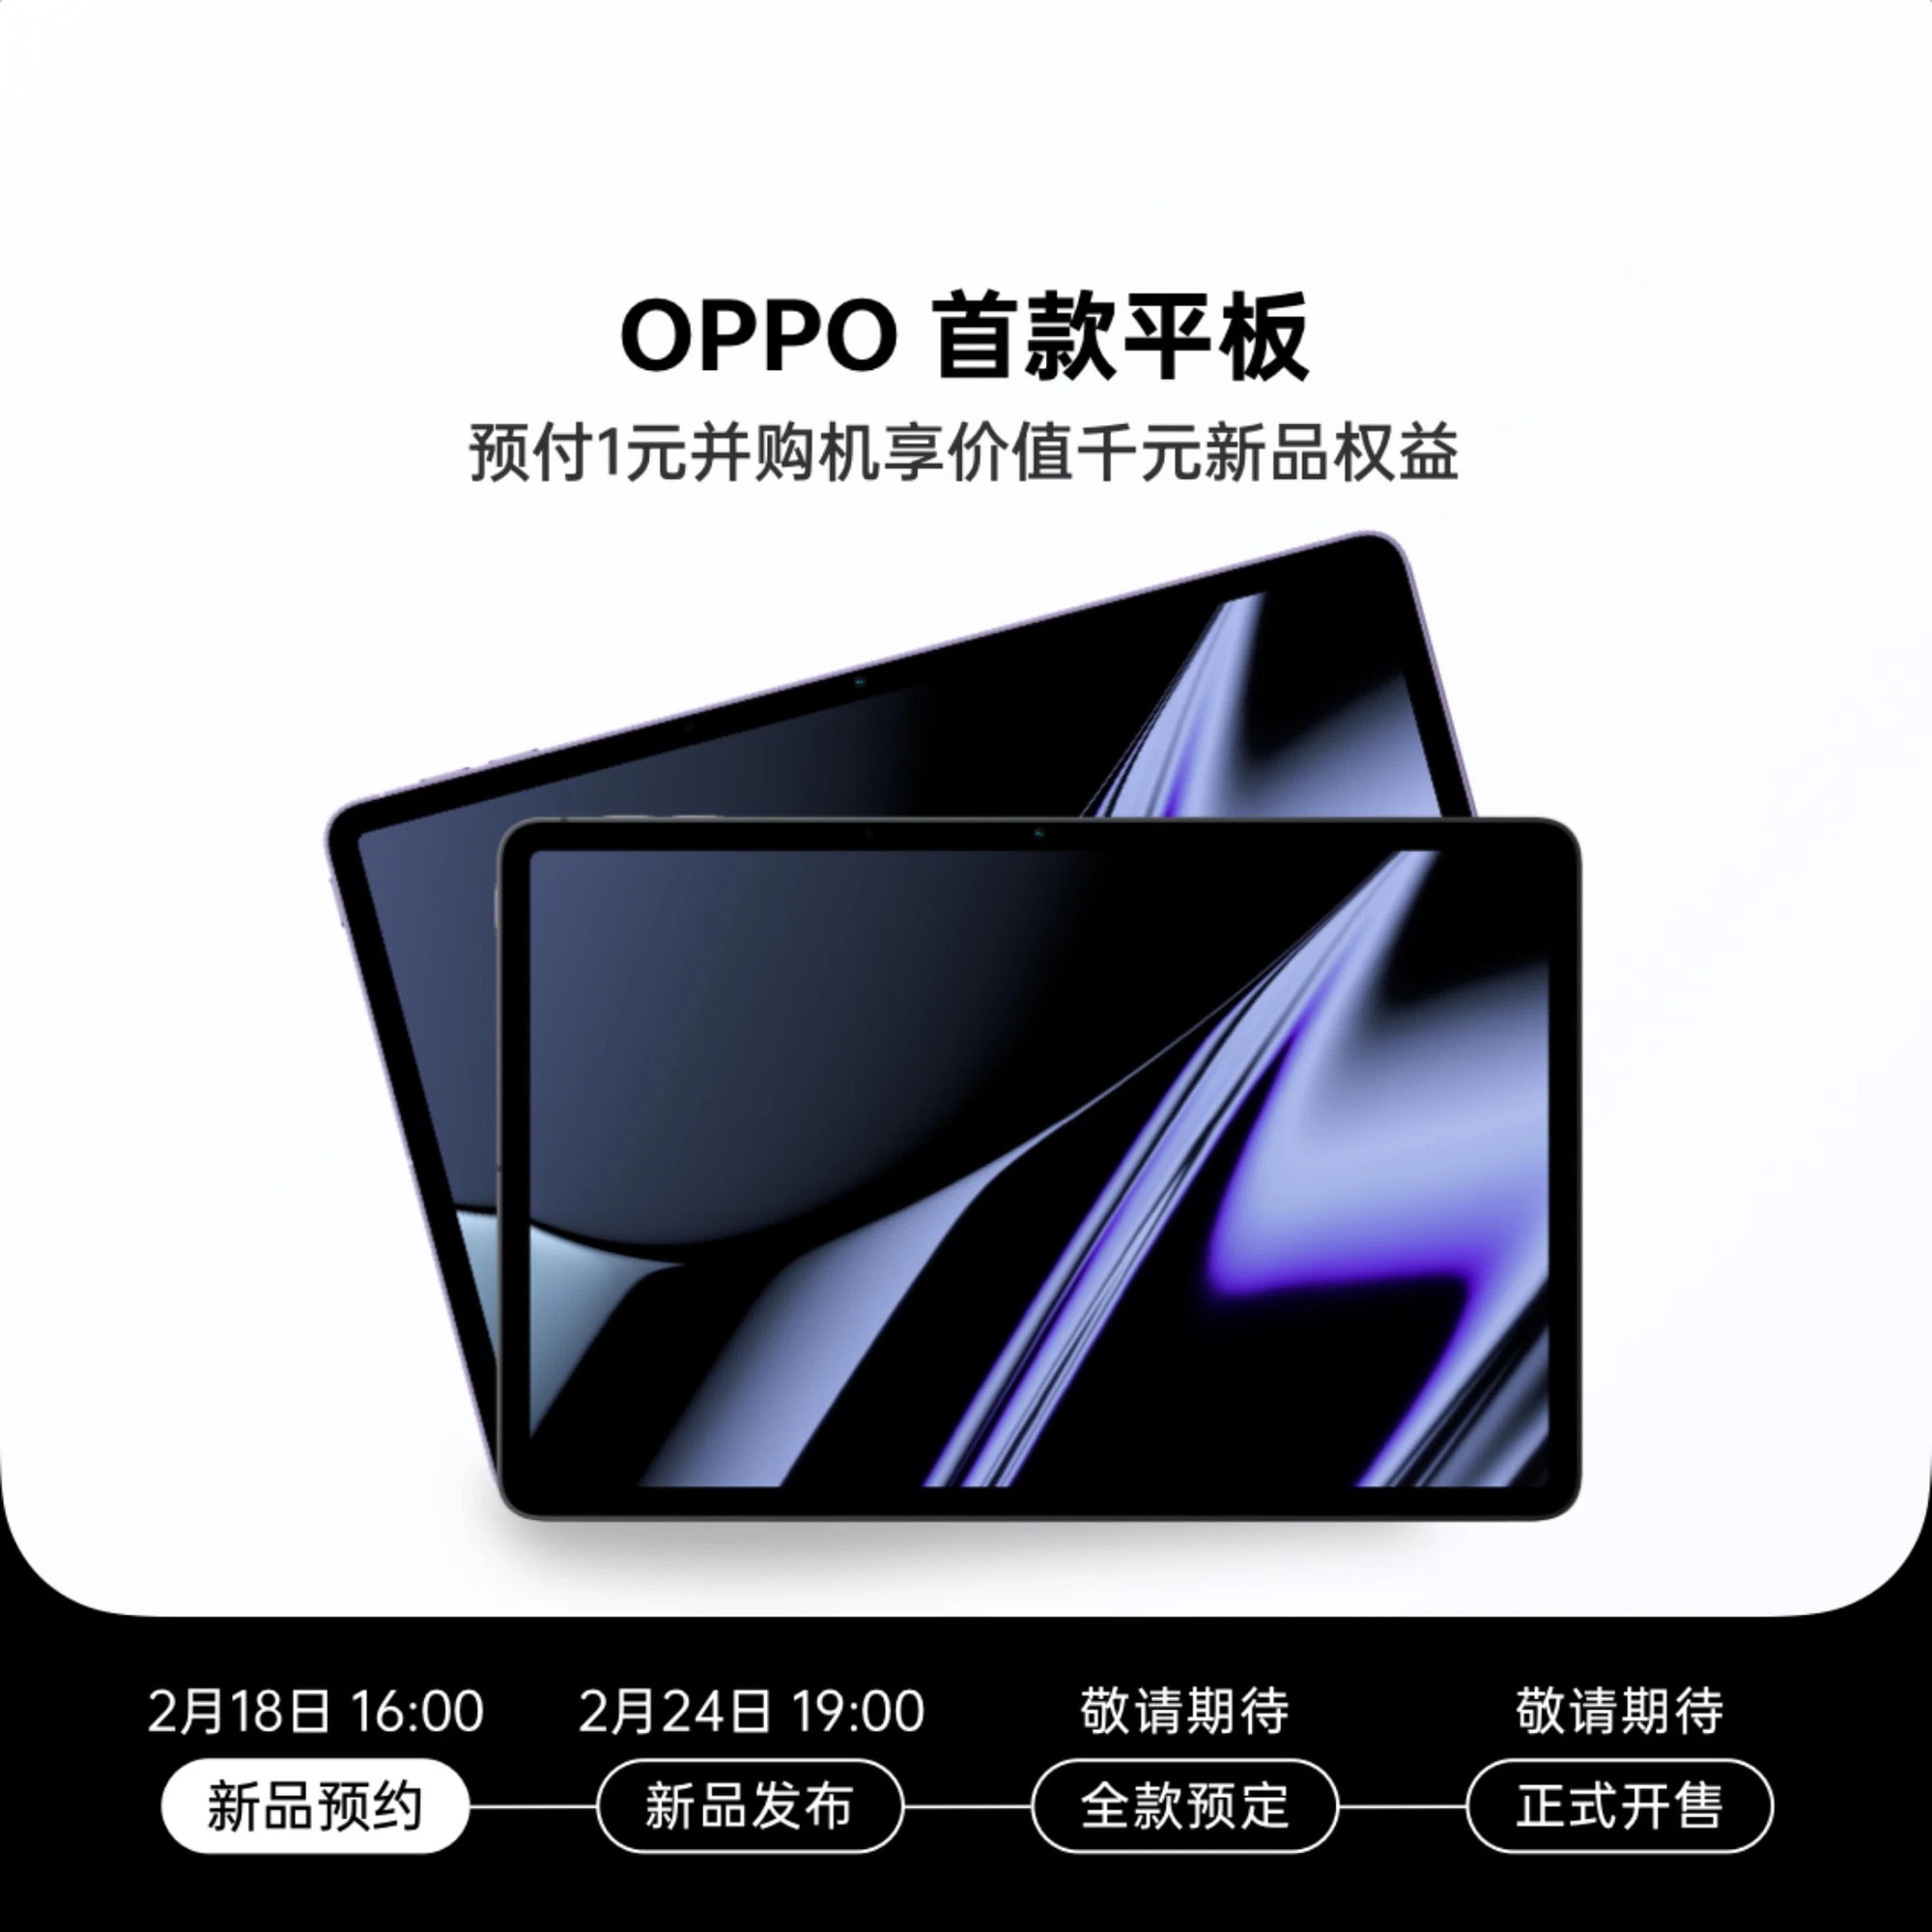 Đây là những gì biết được về OPPO Pad, chiếc máy tính bảng đầu tiên của OPPO